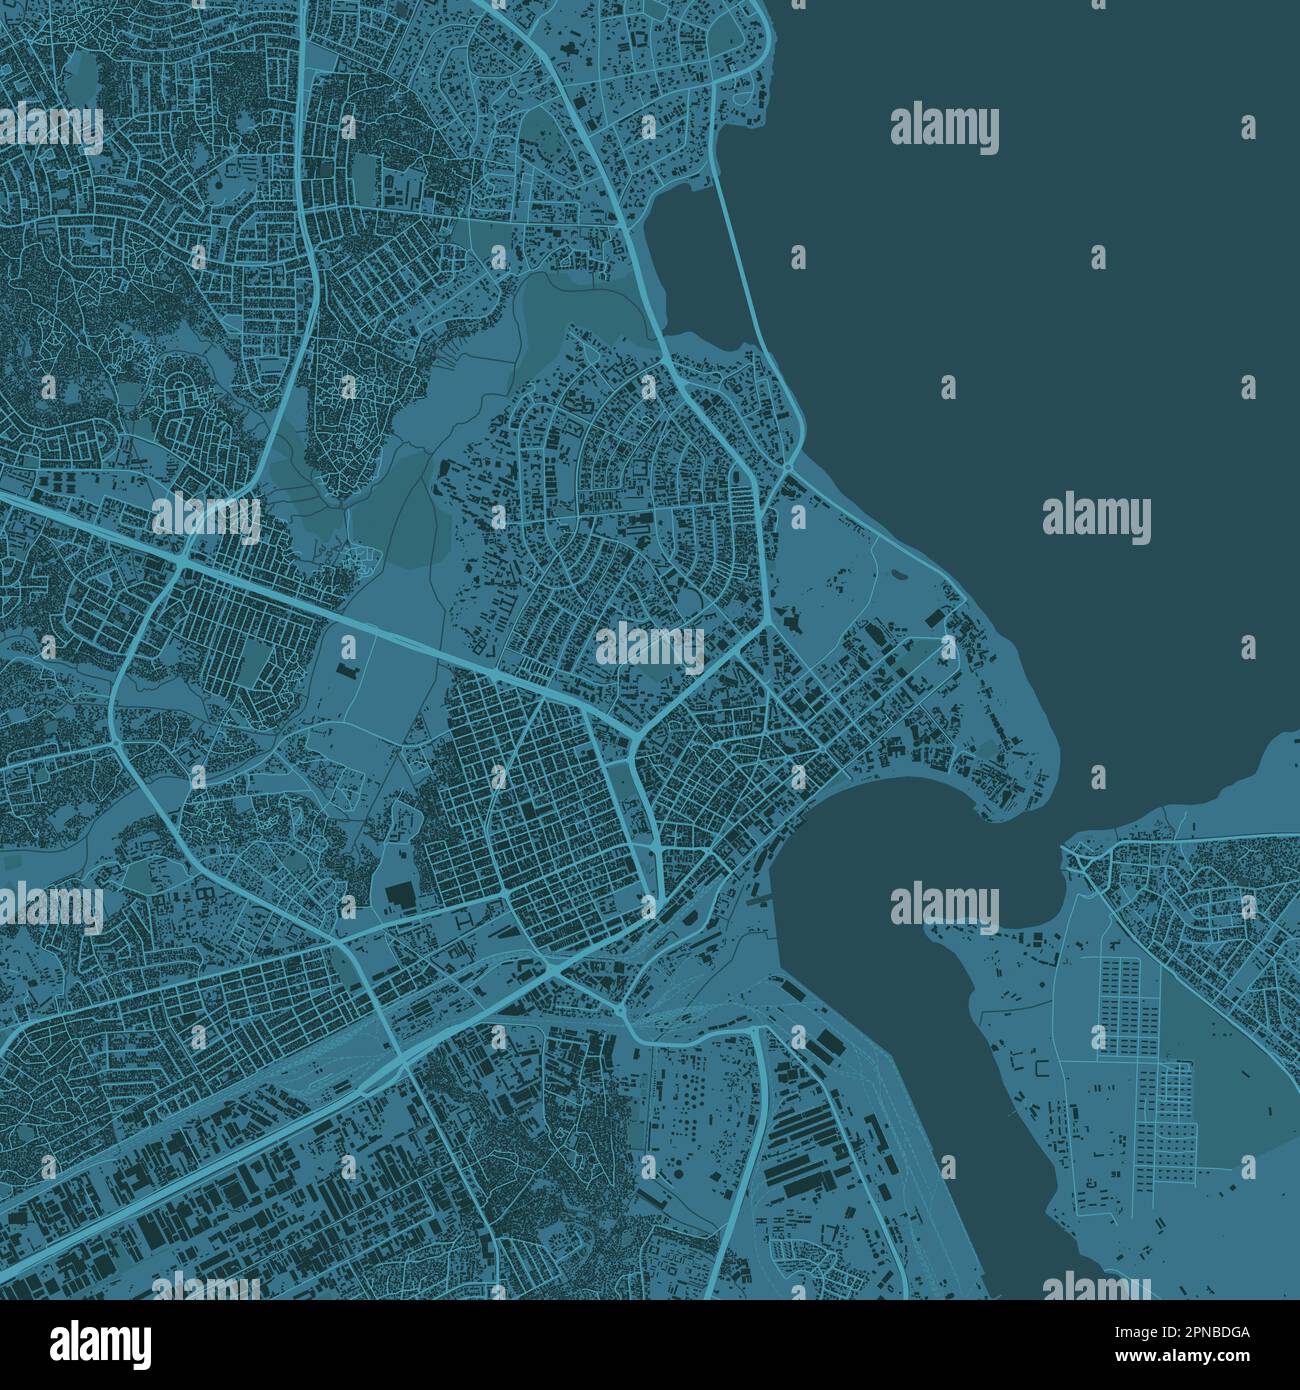 Dunkelblau dar es Salaam Stadtgebiet, Tansania, Vektorkarte im Hintergrund, Straßen und Wasserdarstellung. Breitbildformat, Roadmap für digitales Flachdesign. Stock Vektor